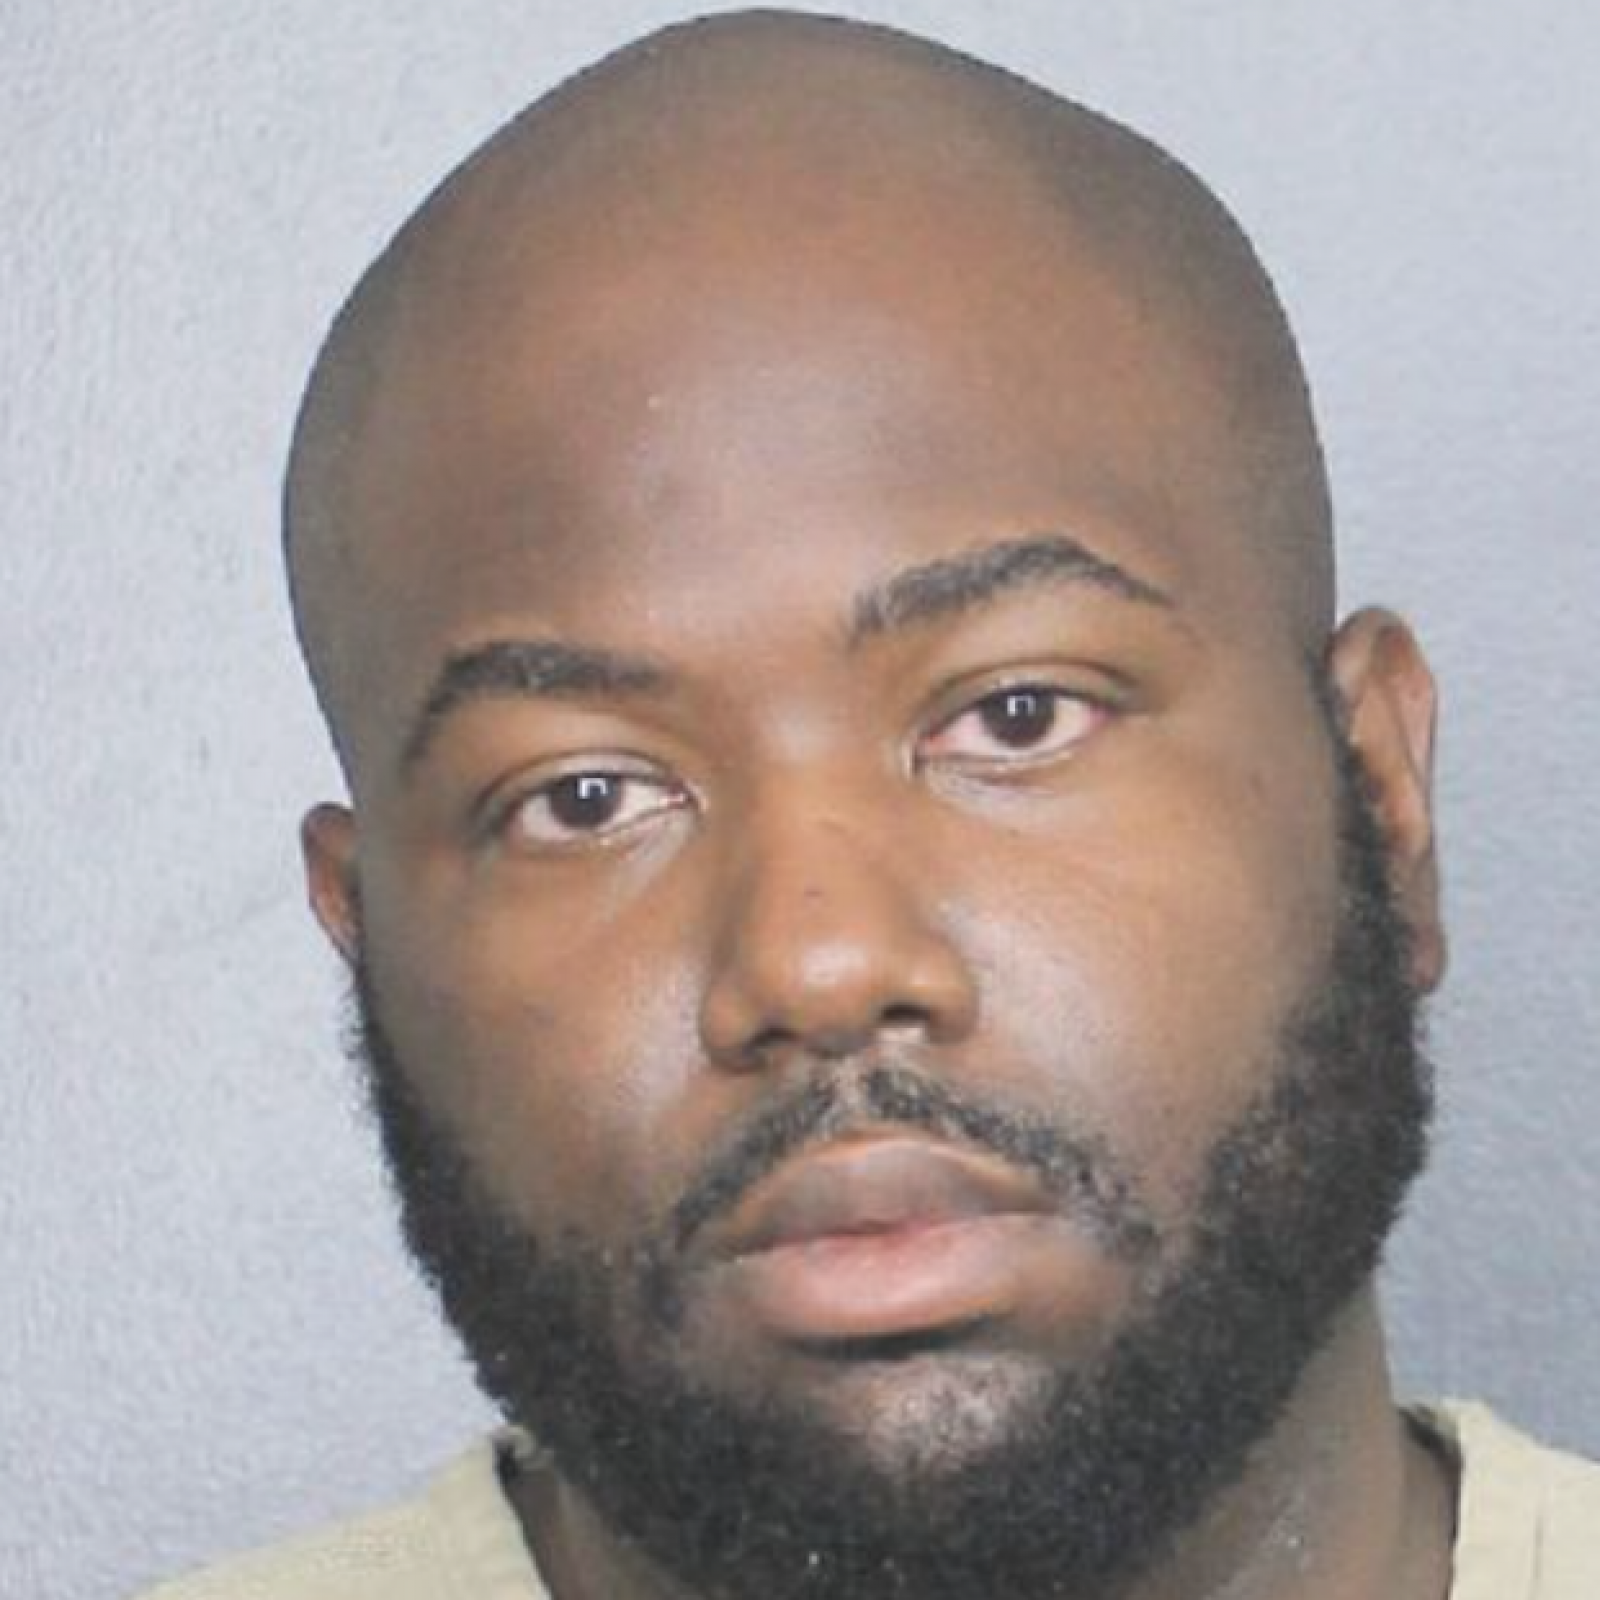 Tiny Girl Young Teen - Florida Man Arrested After 58 Porn Videos, Photos Link Him ...